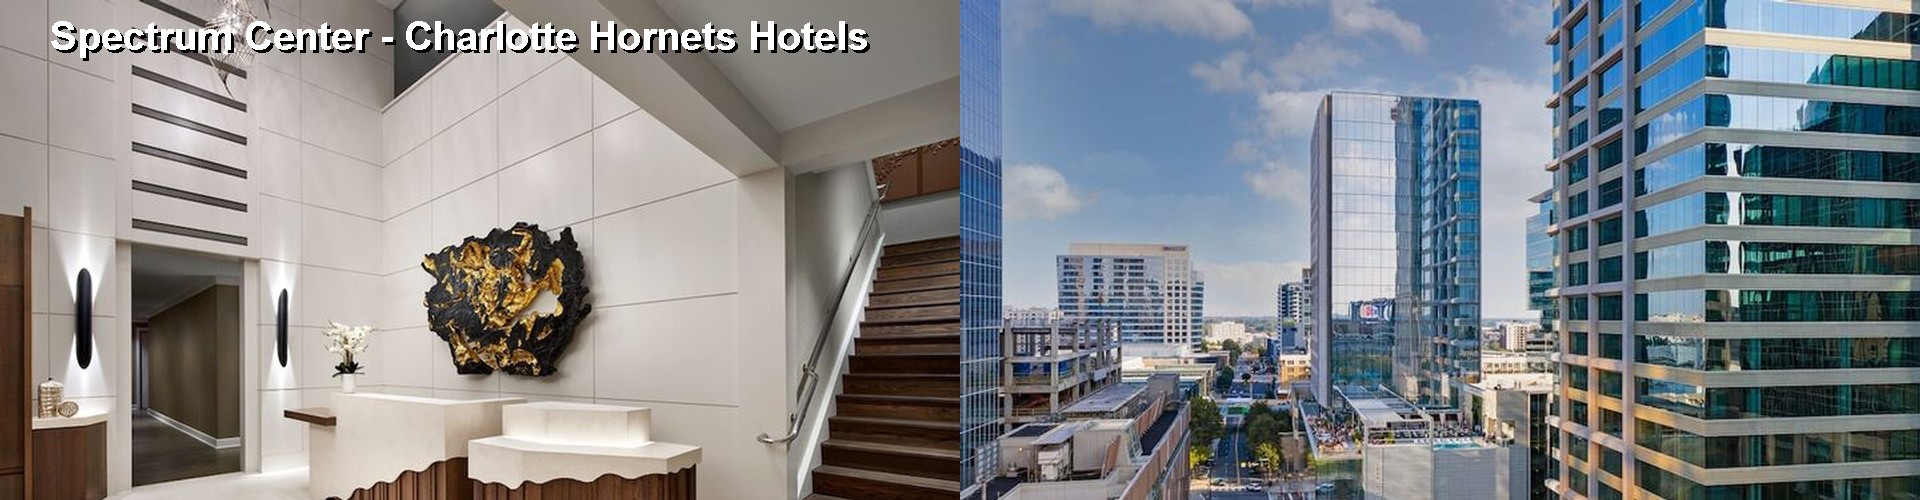 5 Best Hotels near Spectrum Center - Charlotte Hornets